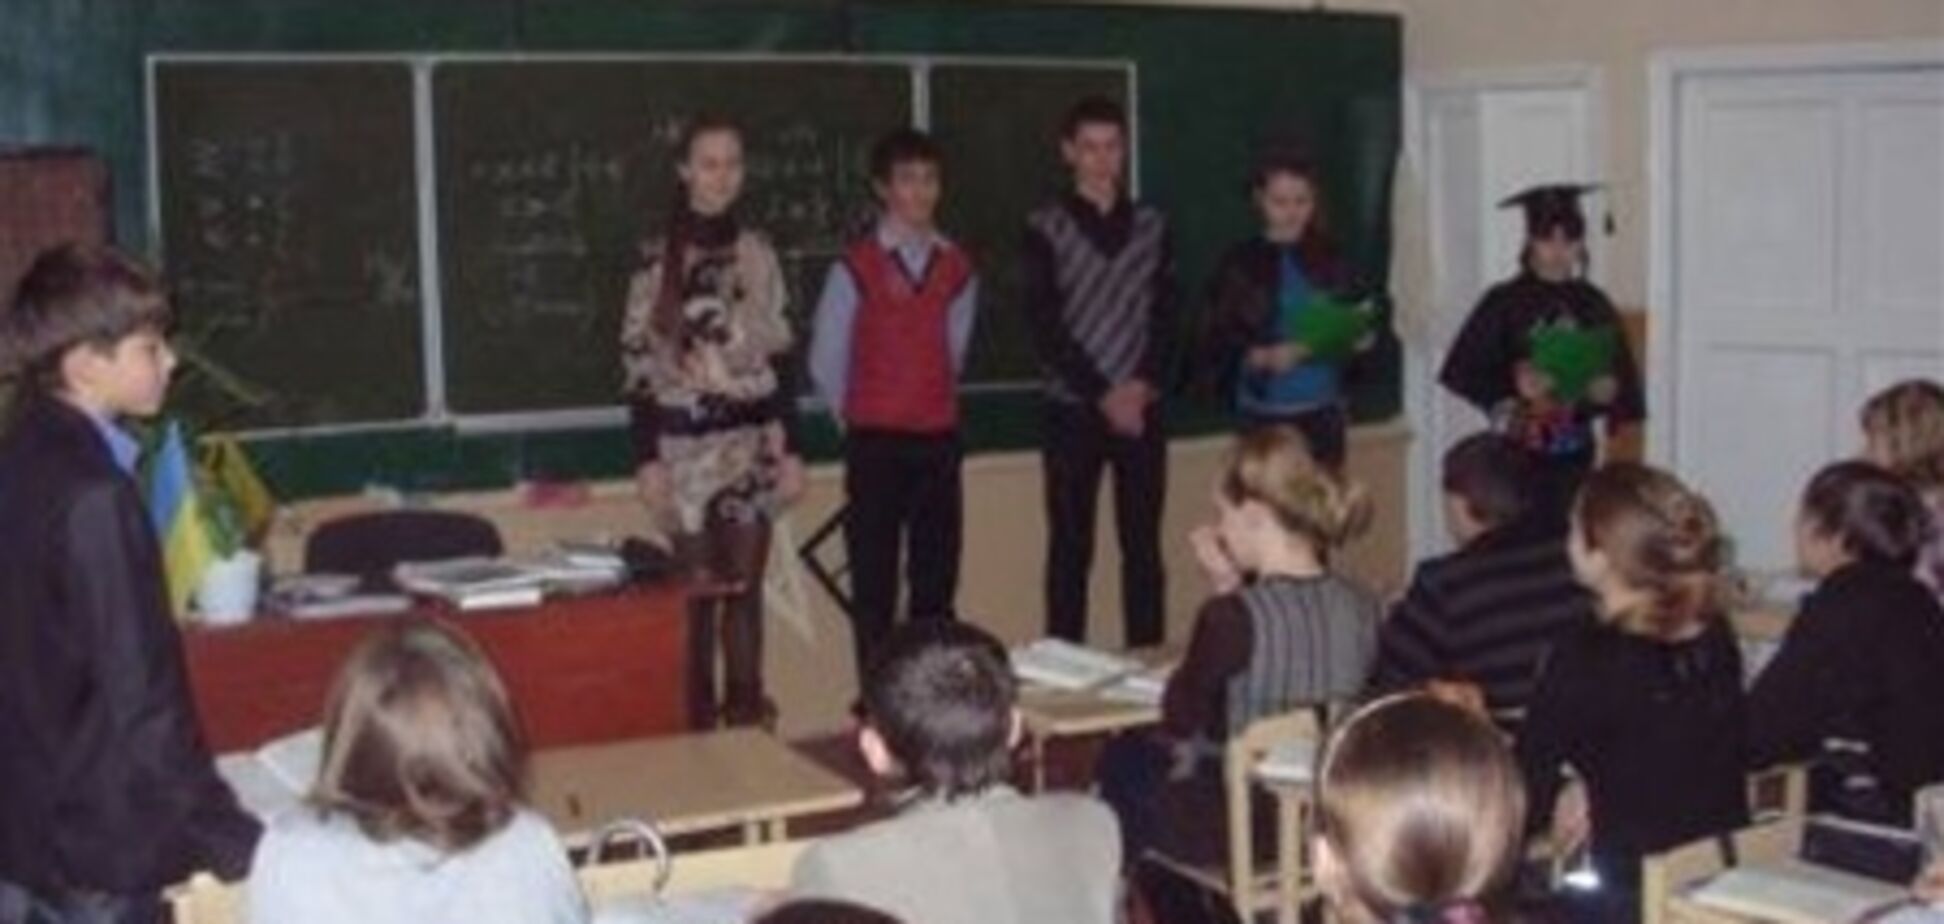 19 гимназистов госпитализированы с пищевым отравлением на Харьковщине